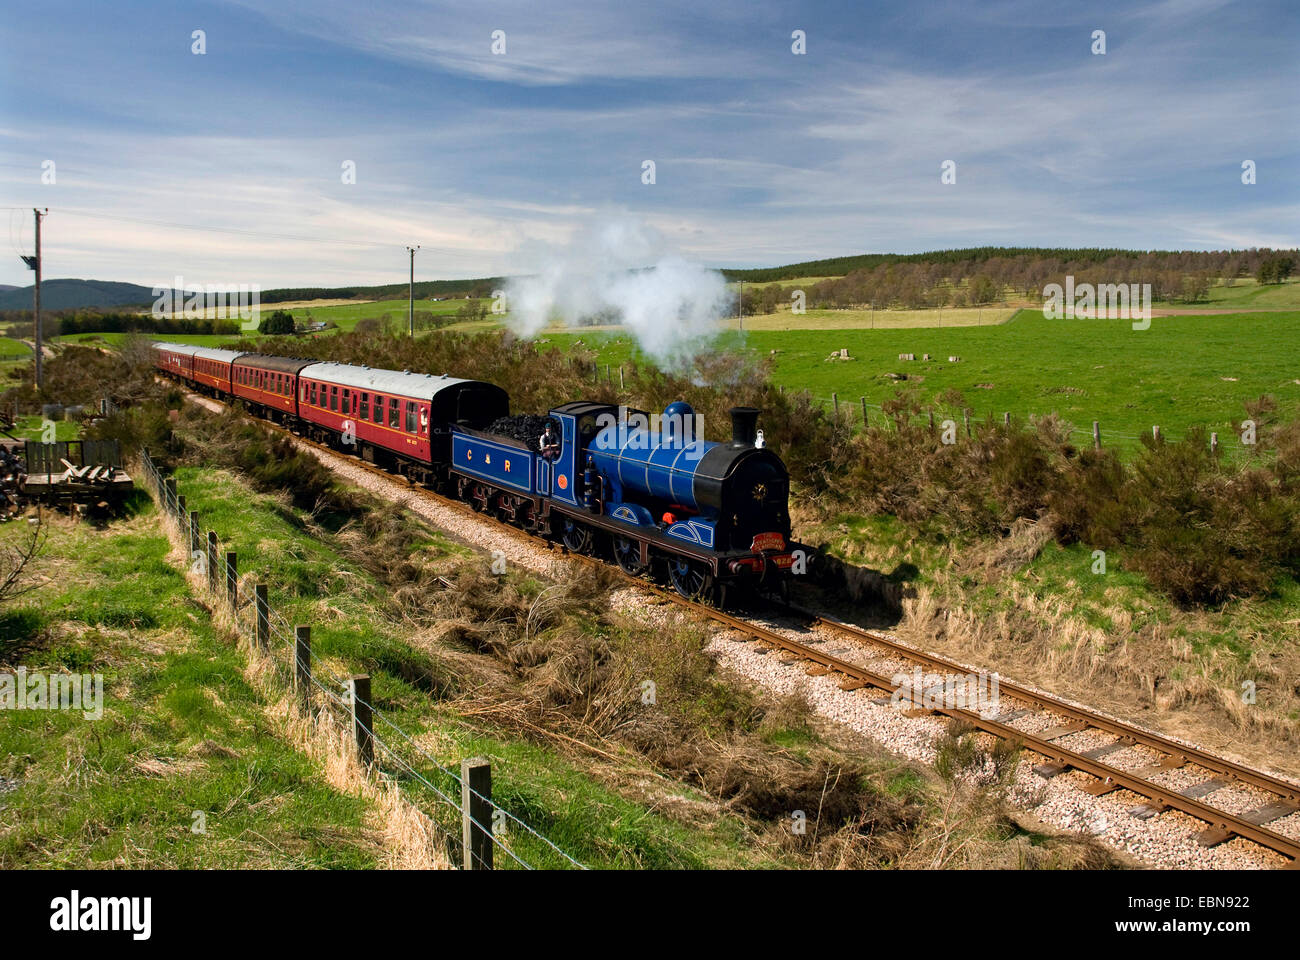 Dampf-Lokomotive 828.812 Klasse, Mcintosh 0-6-0, Jumbo, Caledonian Eisenbahnen, Strathspey Dampfeisenbahn, Aviemore, Vereinigtes Königreich, Schottland Stockfoto